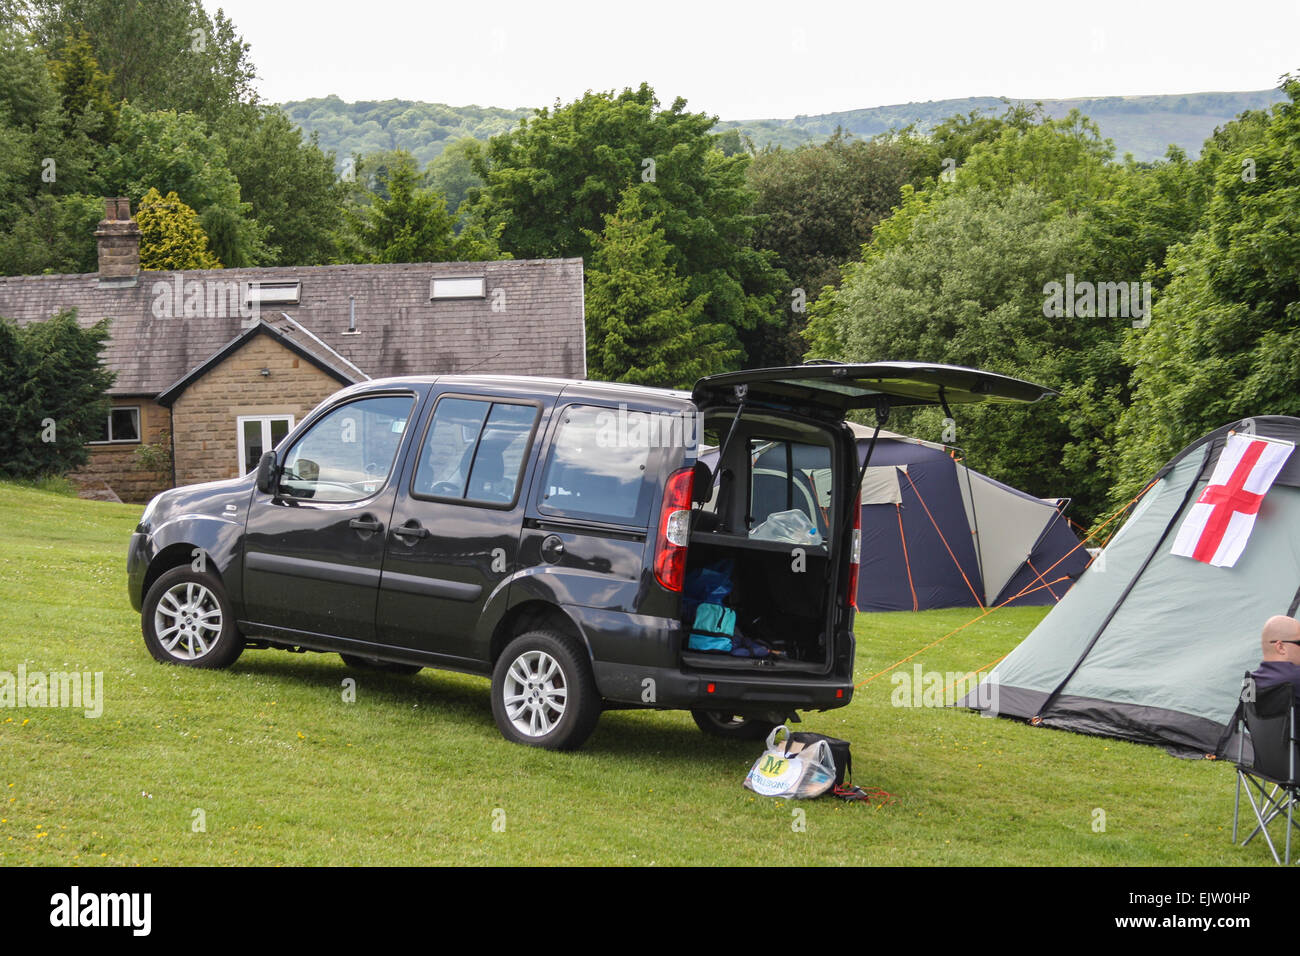 Britische Campingplatz, Lime Tree Park, Herzöge Dr, Buxton, Derbyshire, UK. Fiat  Doblo mit Tür öffnen, Wohnwagen und Zelt mit Anschluß-Markierungsfahne  Stockfotografie - Alamy